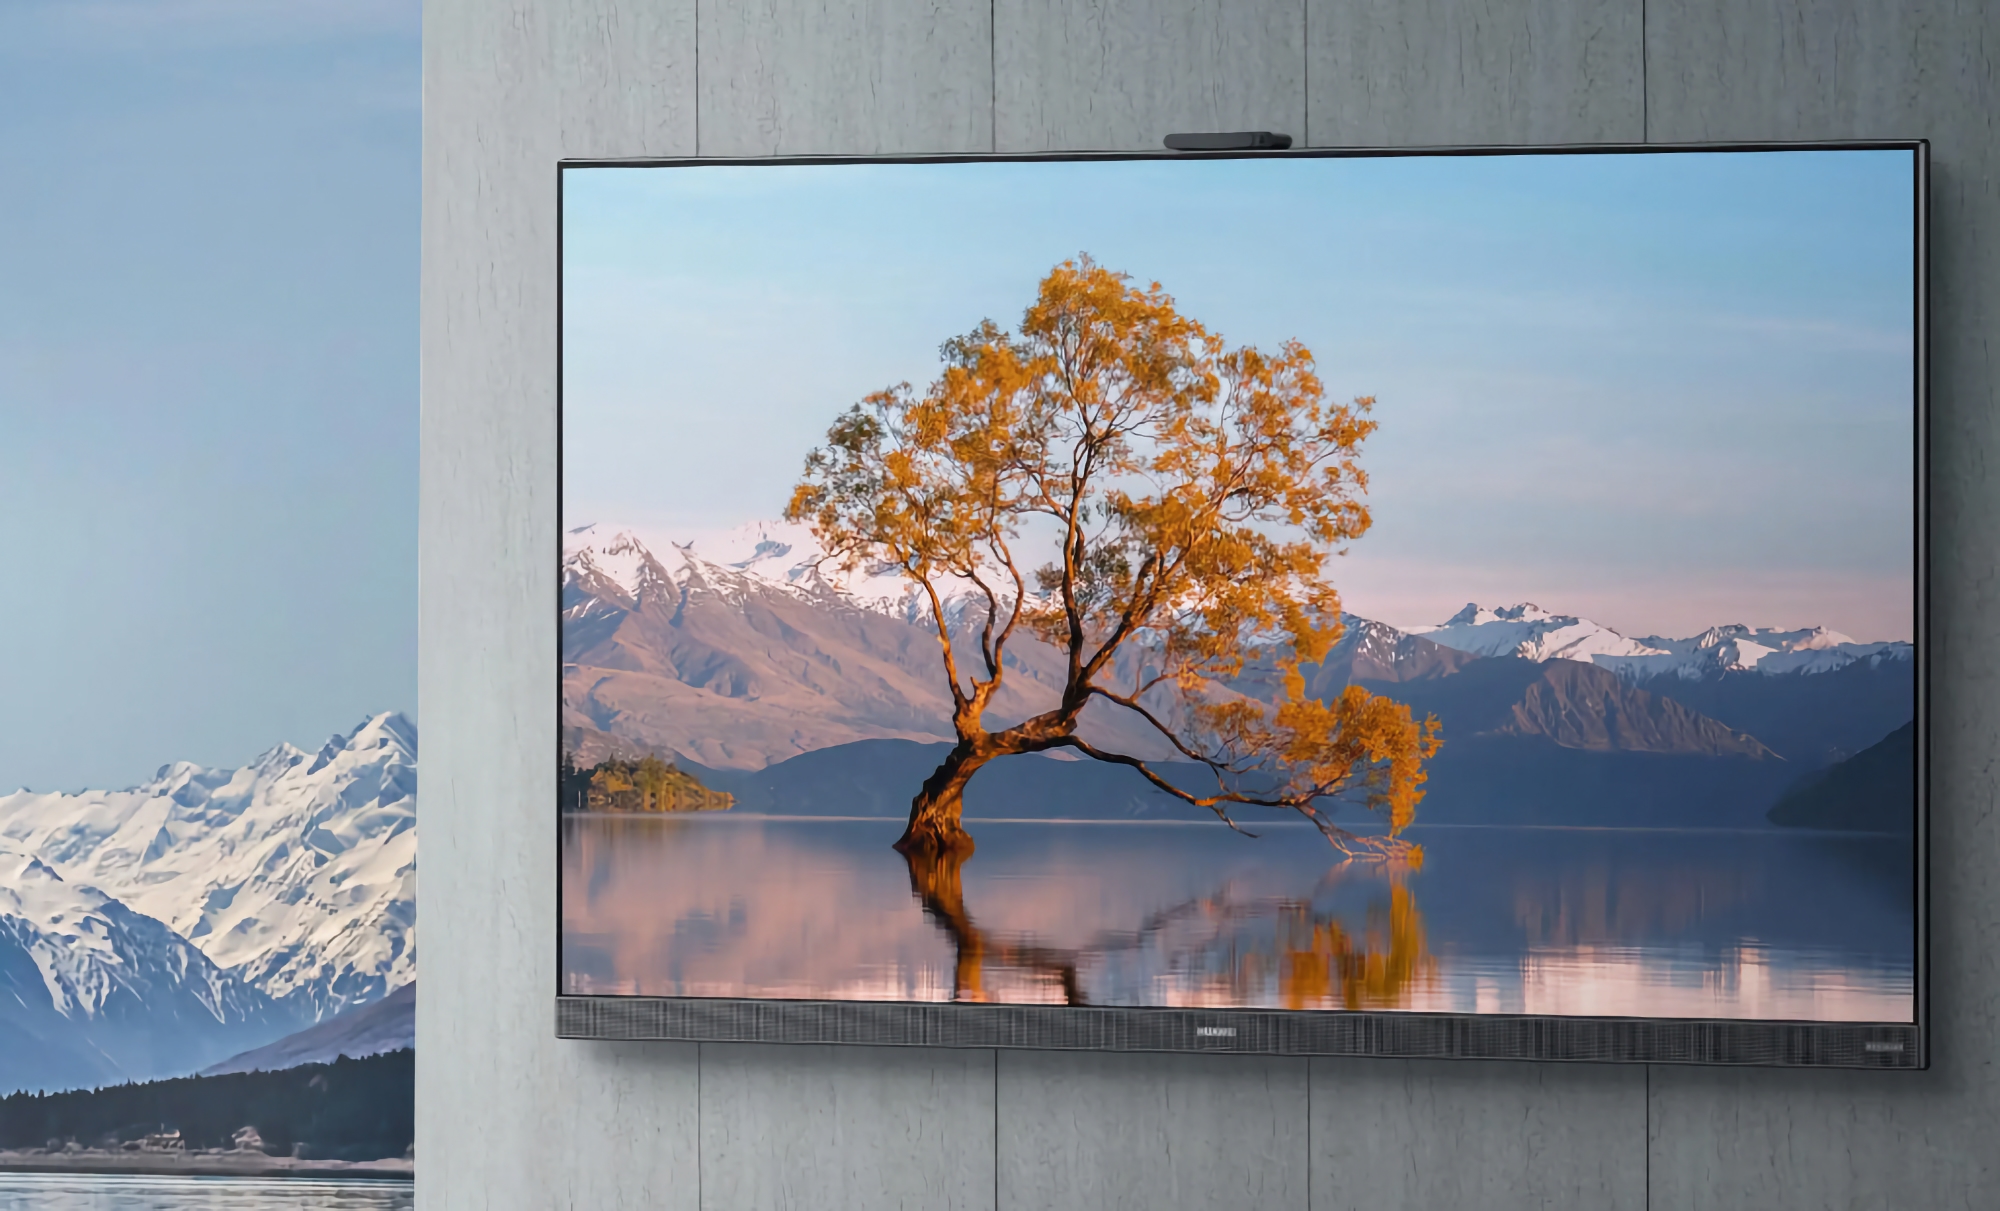 Huawei Smart Screen V TV 2022 : une gamme de téléviseurs intelligents avec des écrans jusqu'à 75 pouces, une prise en charge de 120 Hz, des webcams intégrées et HarmonyOS.